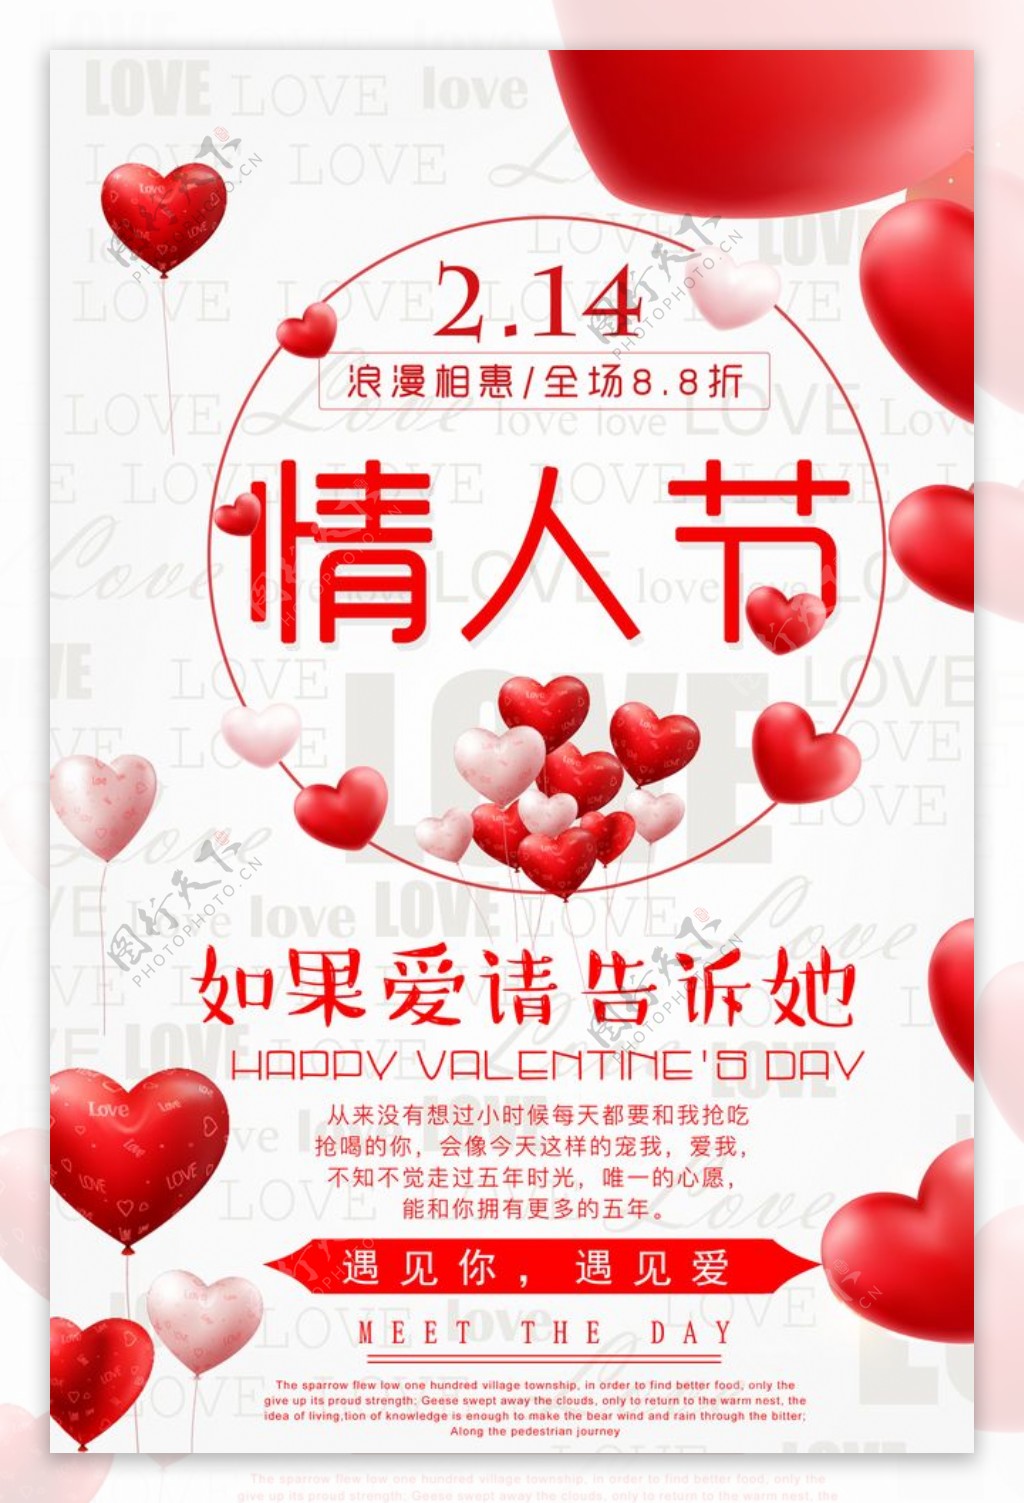 如果爱请深爱呀免费字体下载 - 中文字体免费下载尽在字体家